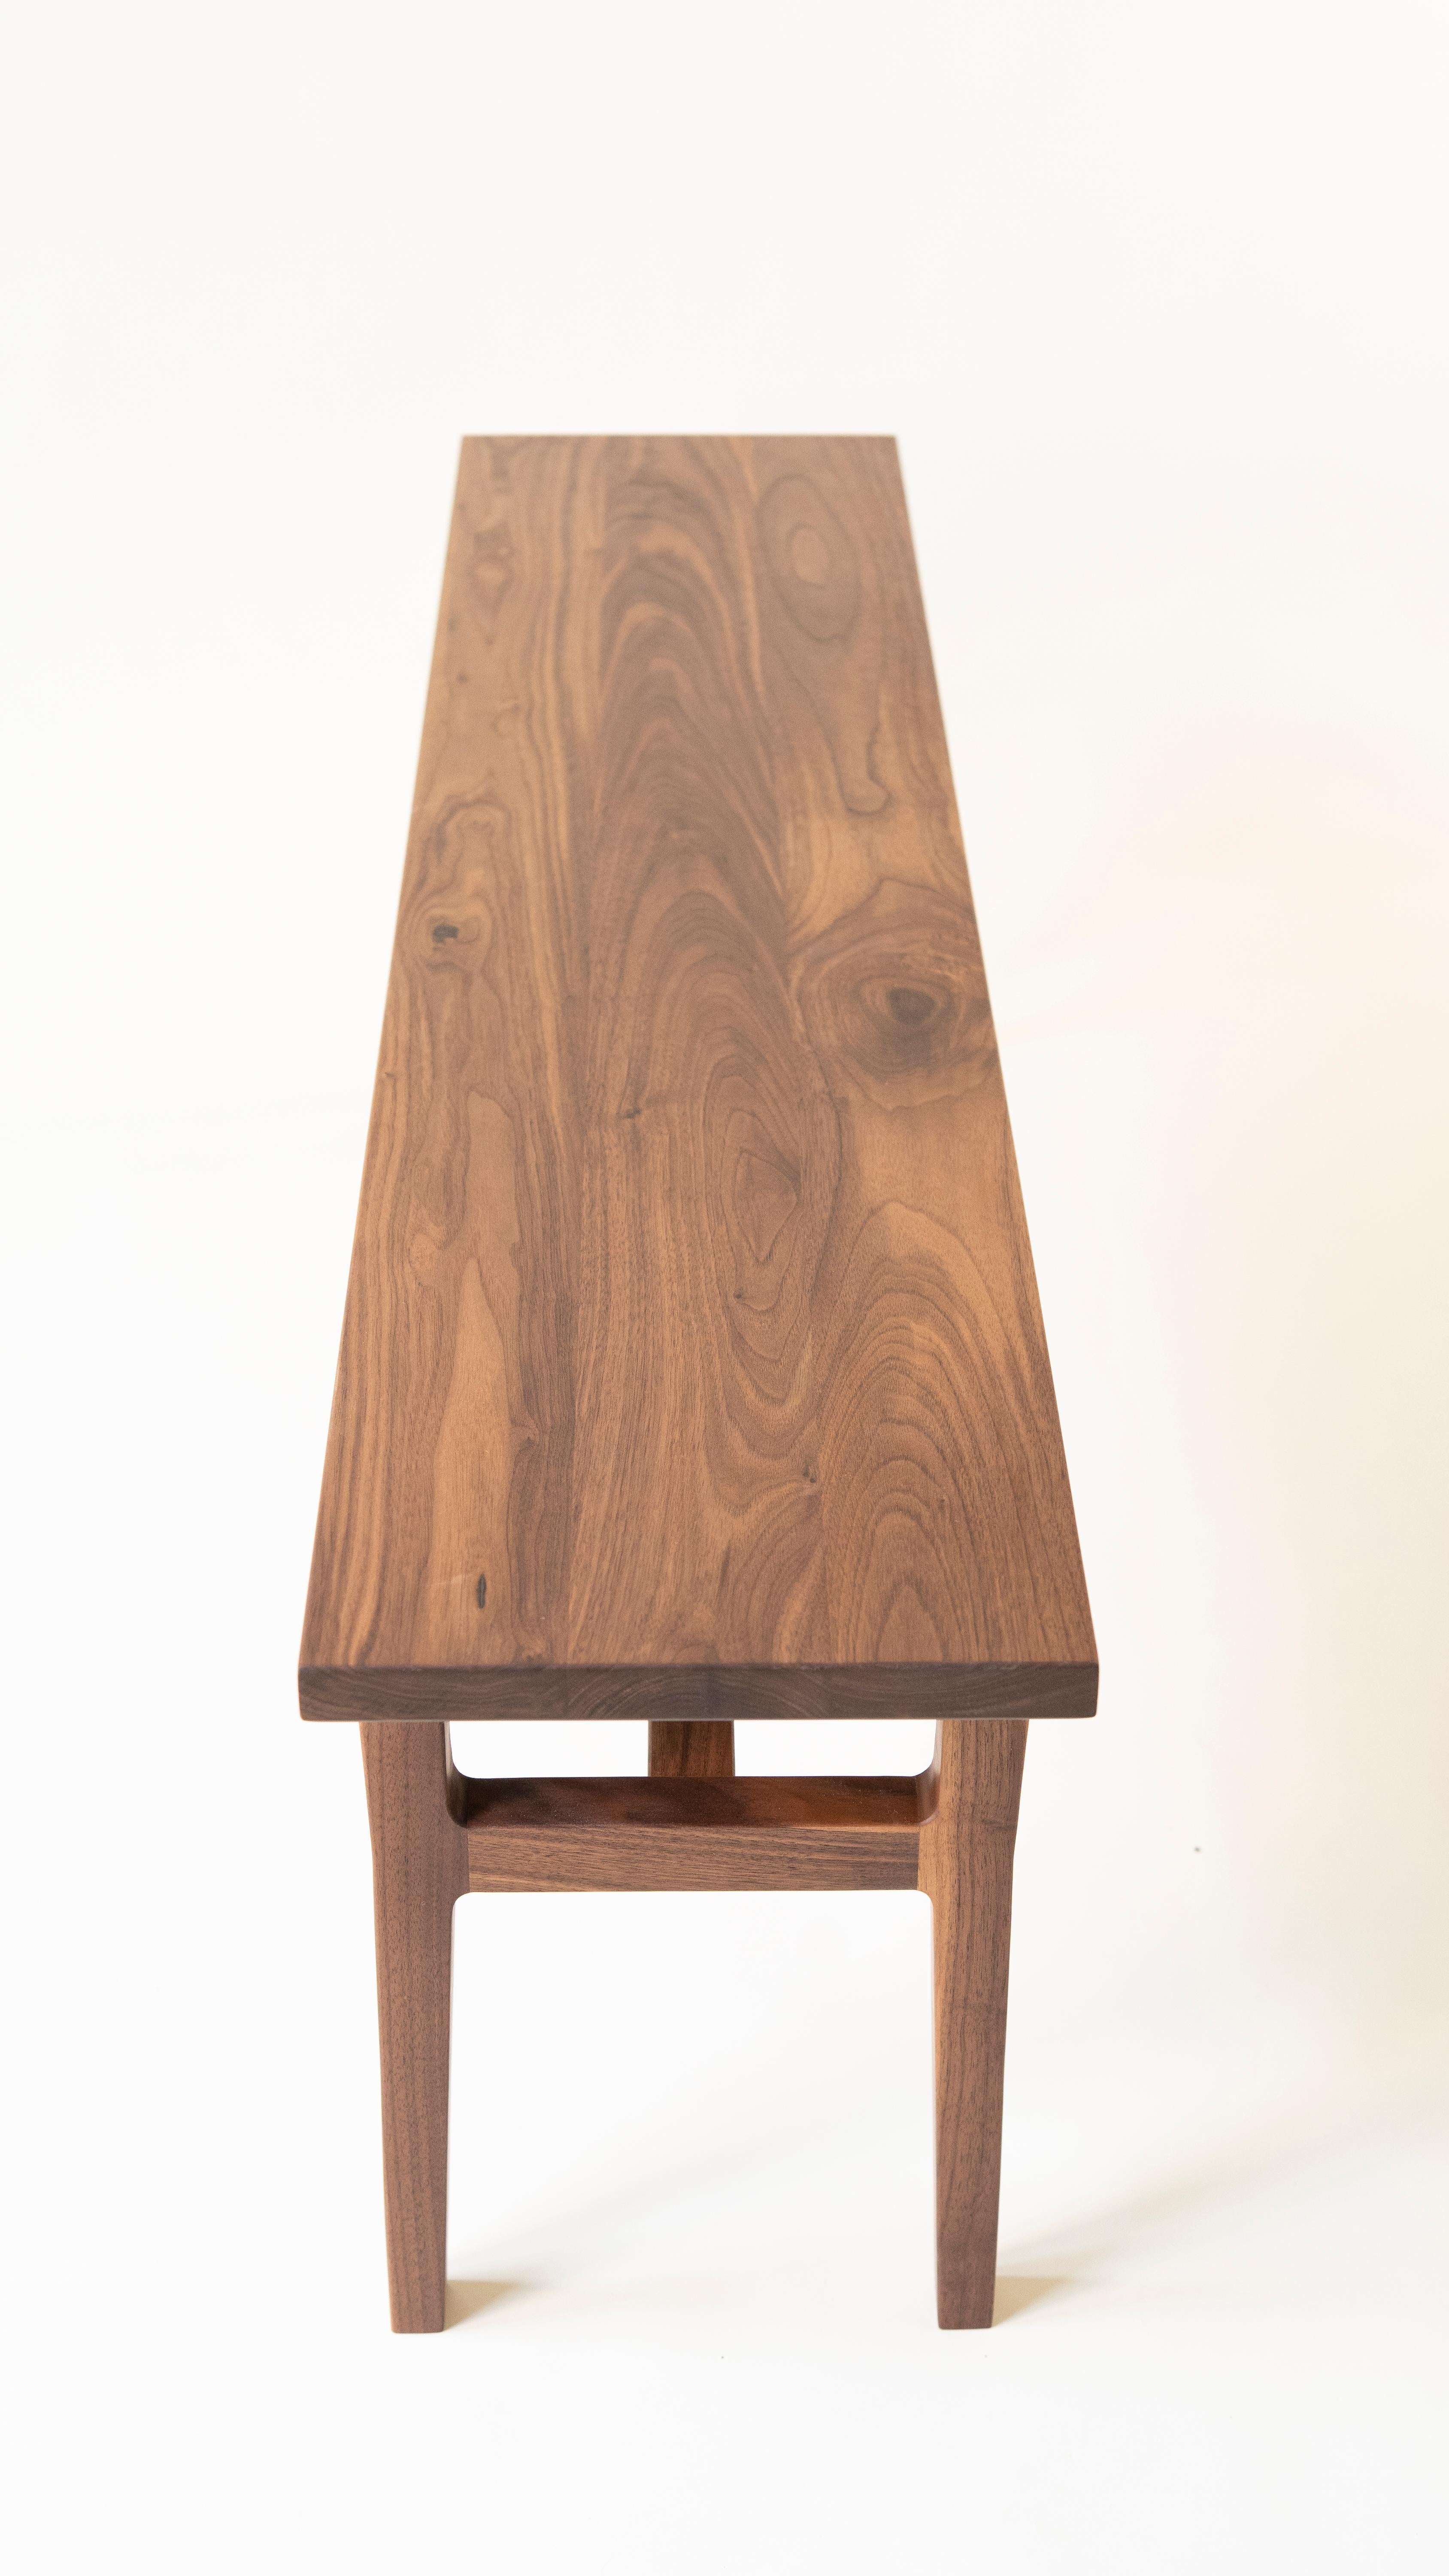 Inspiriert von der dänischen Einfachheit und dem organischen Design, zeichnet sich die Lorbeerbank durch skulpturale Beine, schlichte Winkel und robuste Tischlerarbeiten aus. Die Bank ist aus nachhaltigem Nussbaumholz gefertigt, wobei jedes